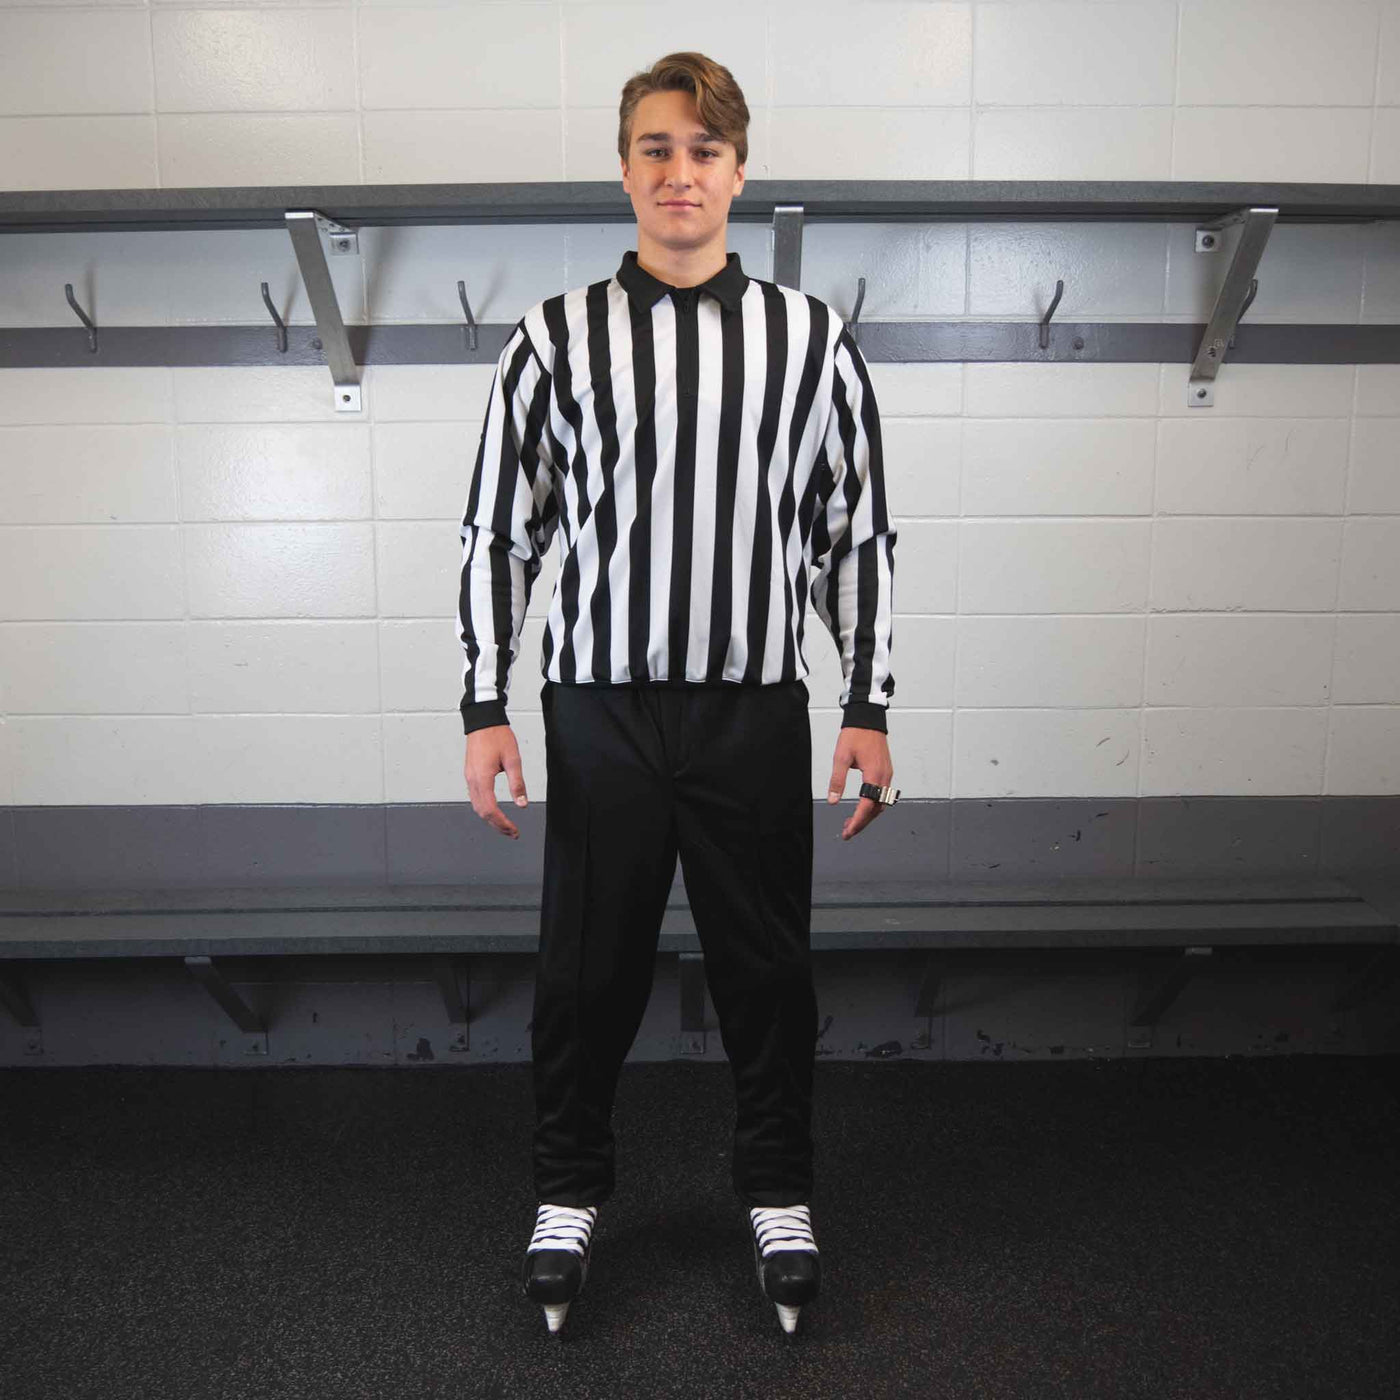 Zebrasclub beginner hockey referee kit